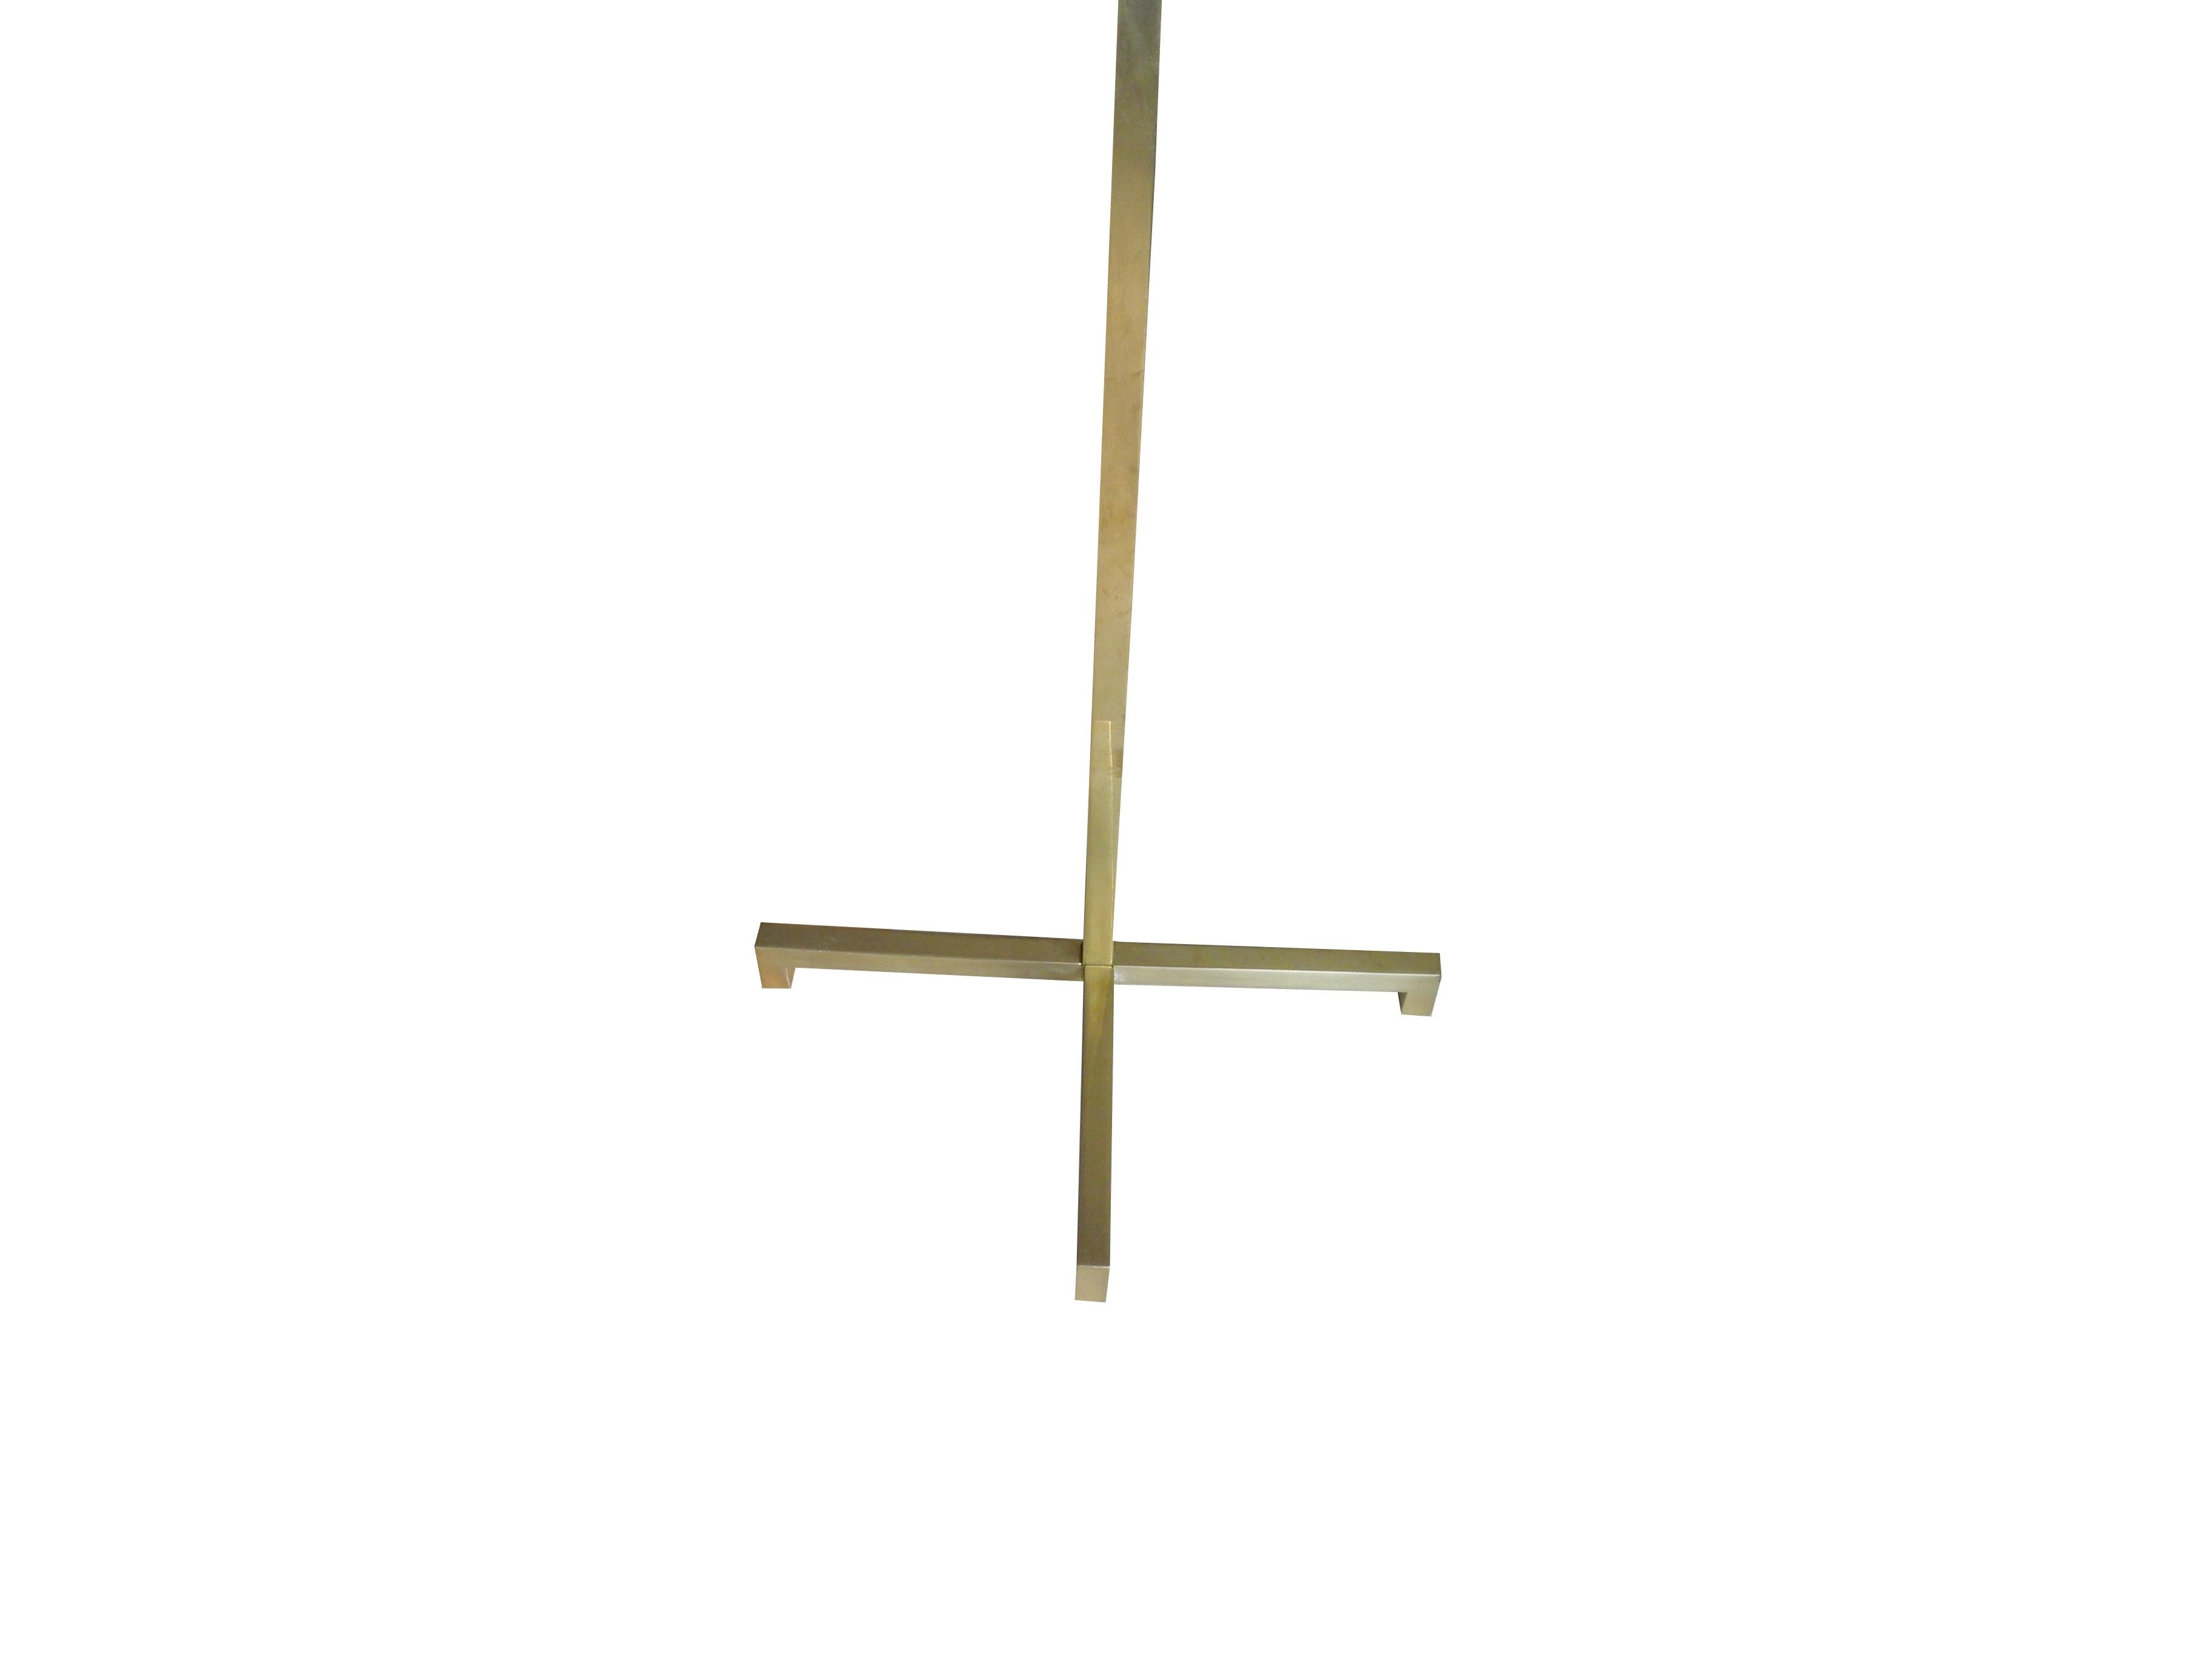 20th Century Modern Brass Floor Lamp by T.H. Robsjohn-Gibbings for Hansen  For Sale